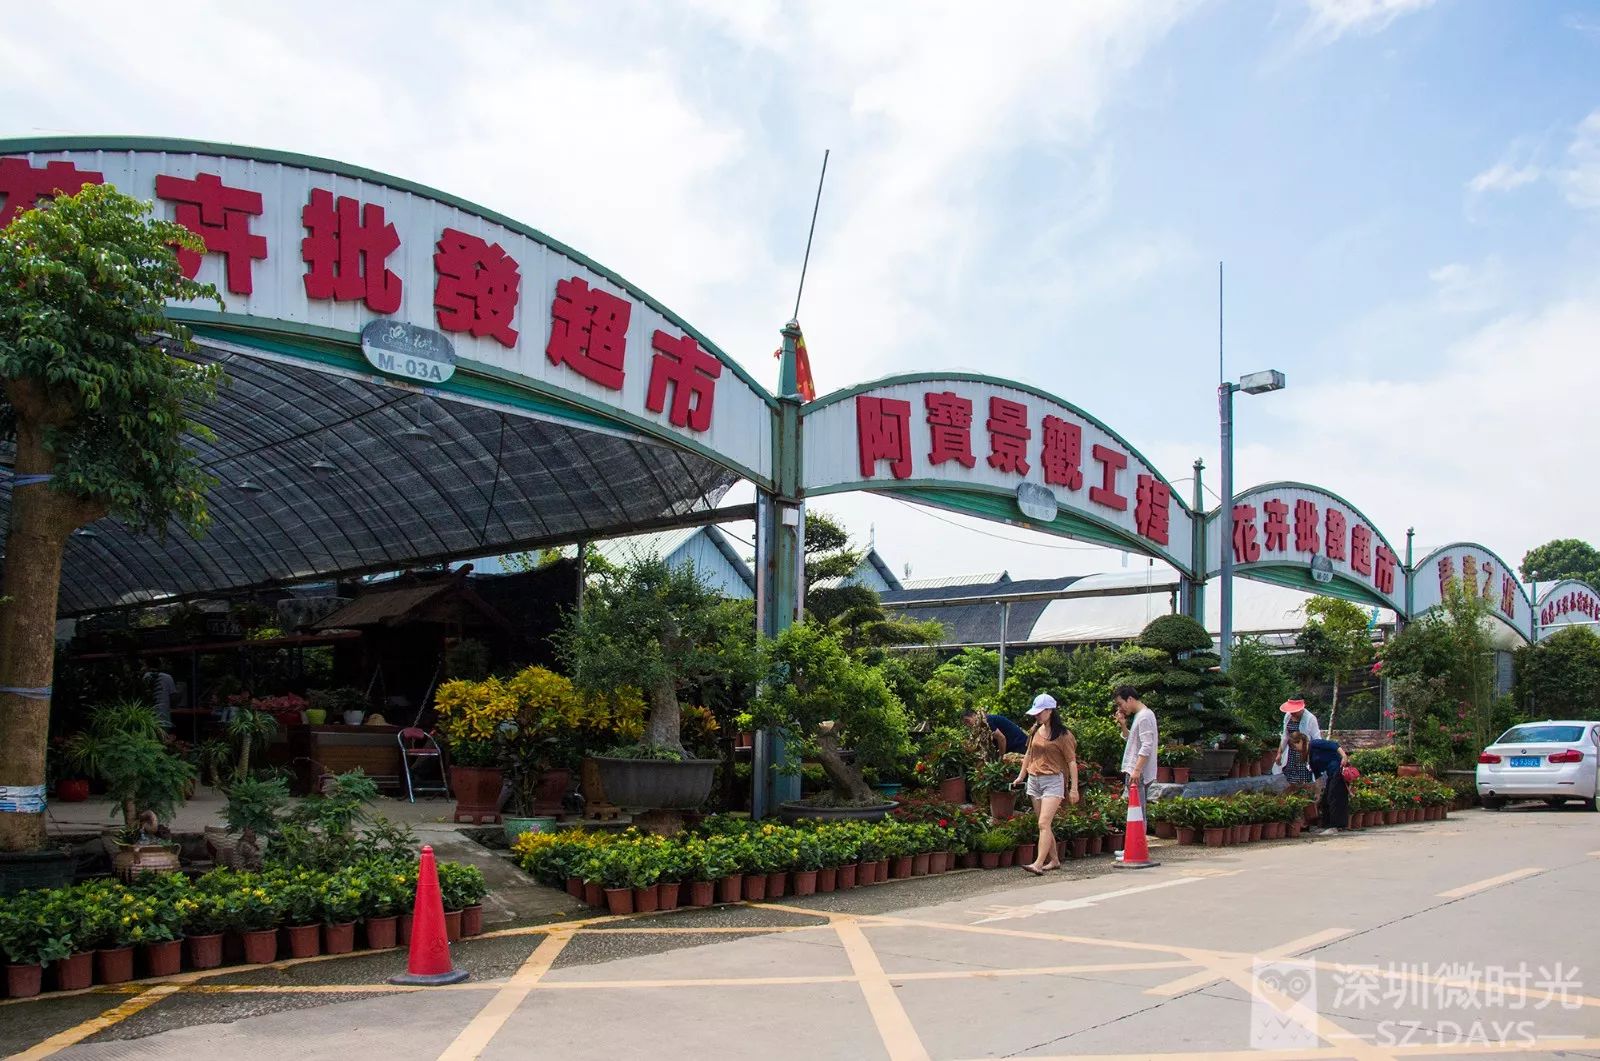 深圳八卦岭花卉市场图片